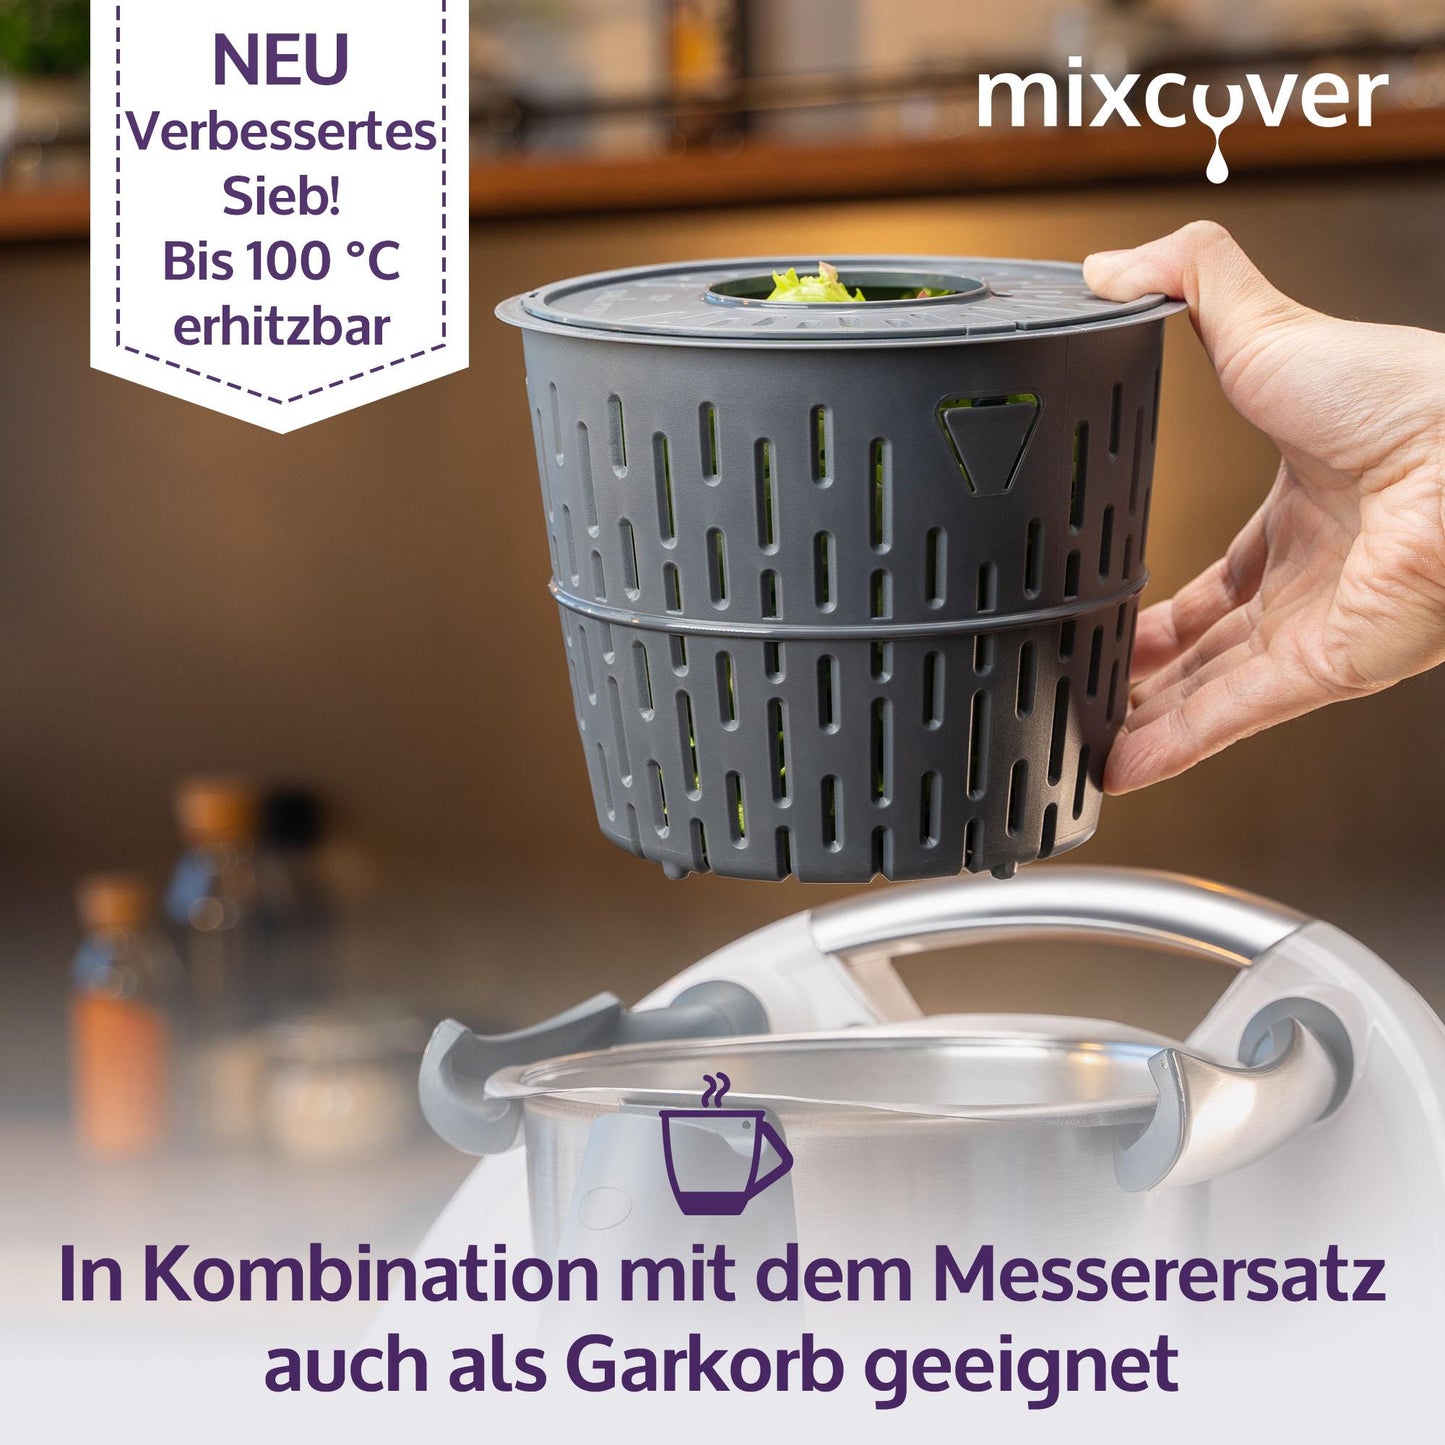 B-Goods: mixcover Salada nuber compatibile con Thermomix / Bimby TM6 / TM5 Insalata Essiccatore setaccio Garkorb